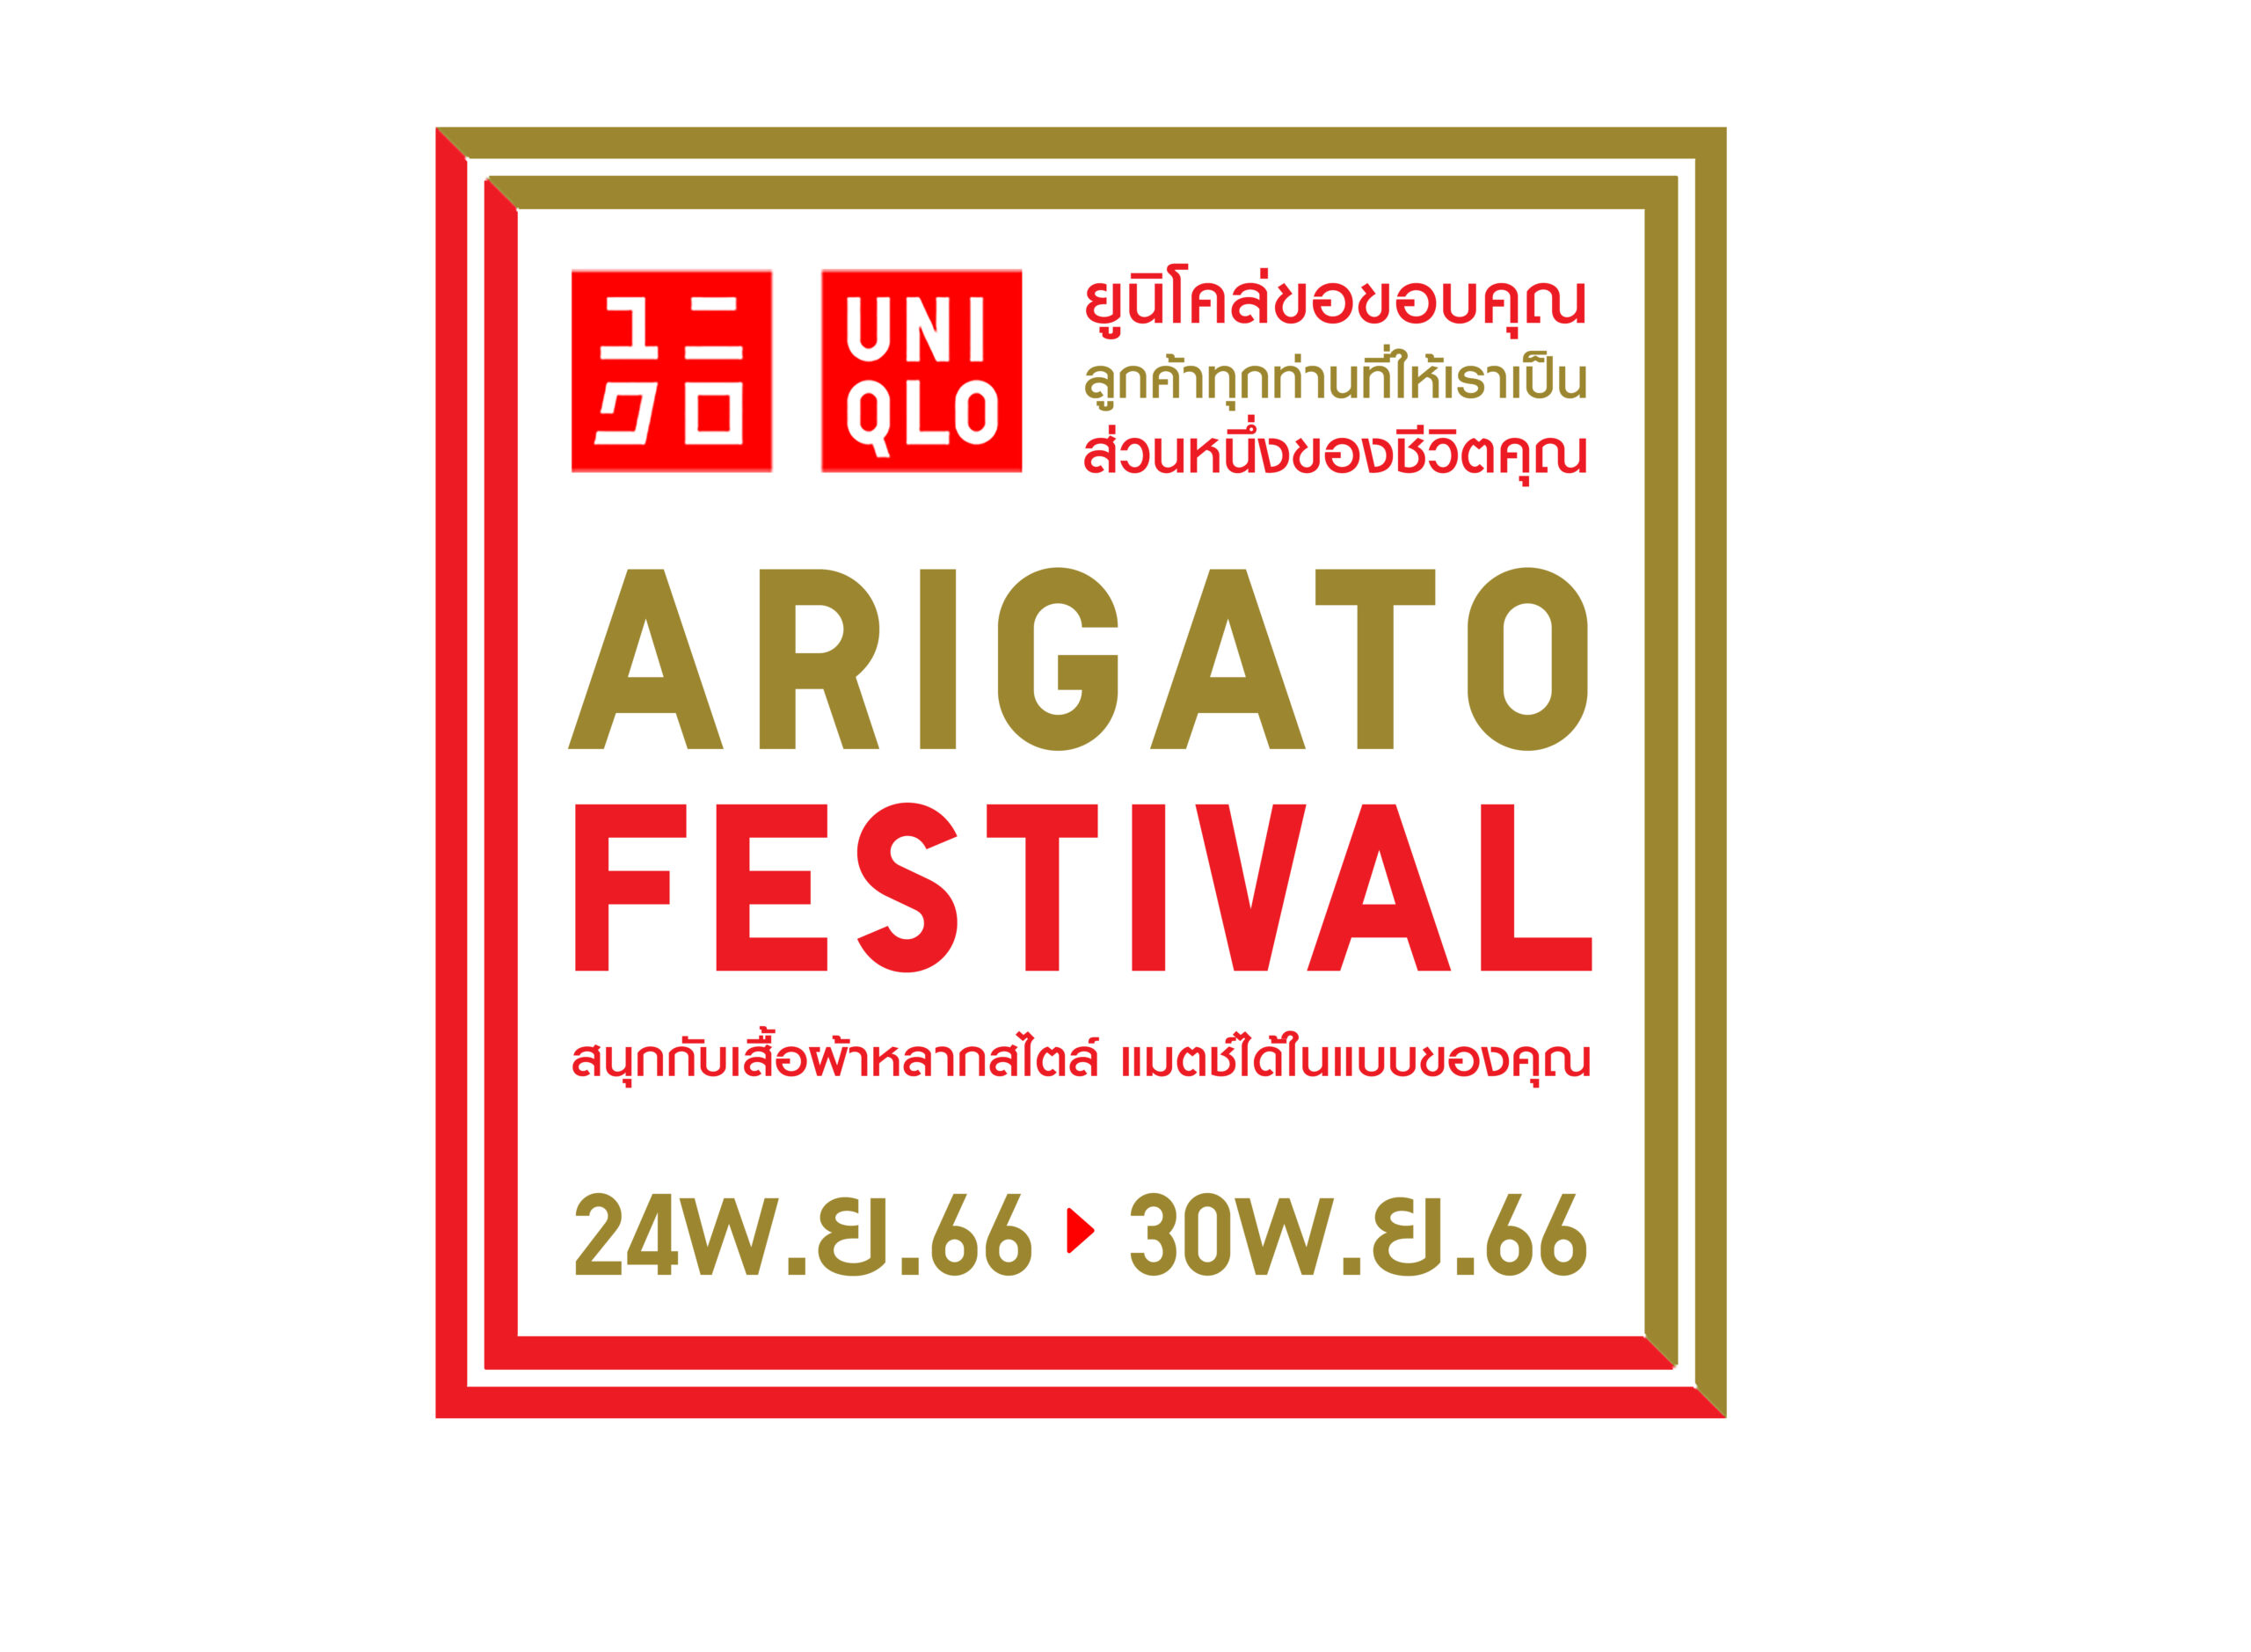 ยูนิโคล่ เฉลิมฉลอง ARIGATO FESTIVAL แทนคำขอบคุณแด่ลูกค้าชาวไทย  ช้อปสนุกส่งท้ายปีพร้อมกัน